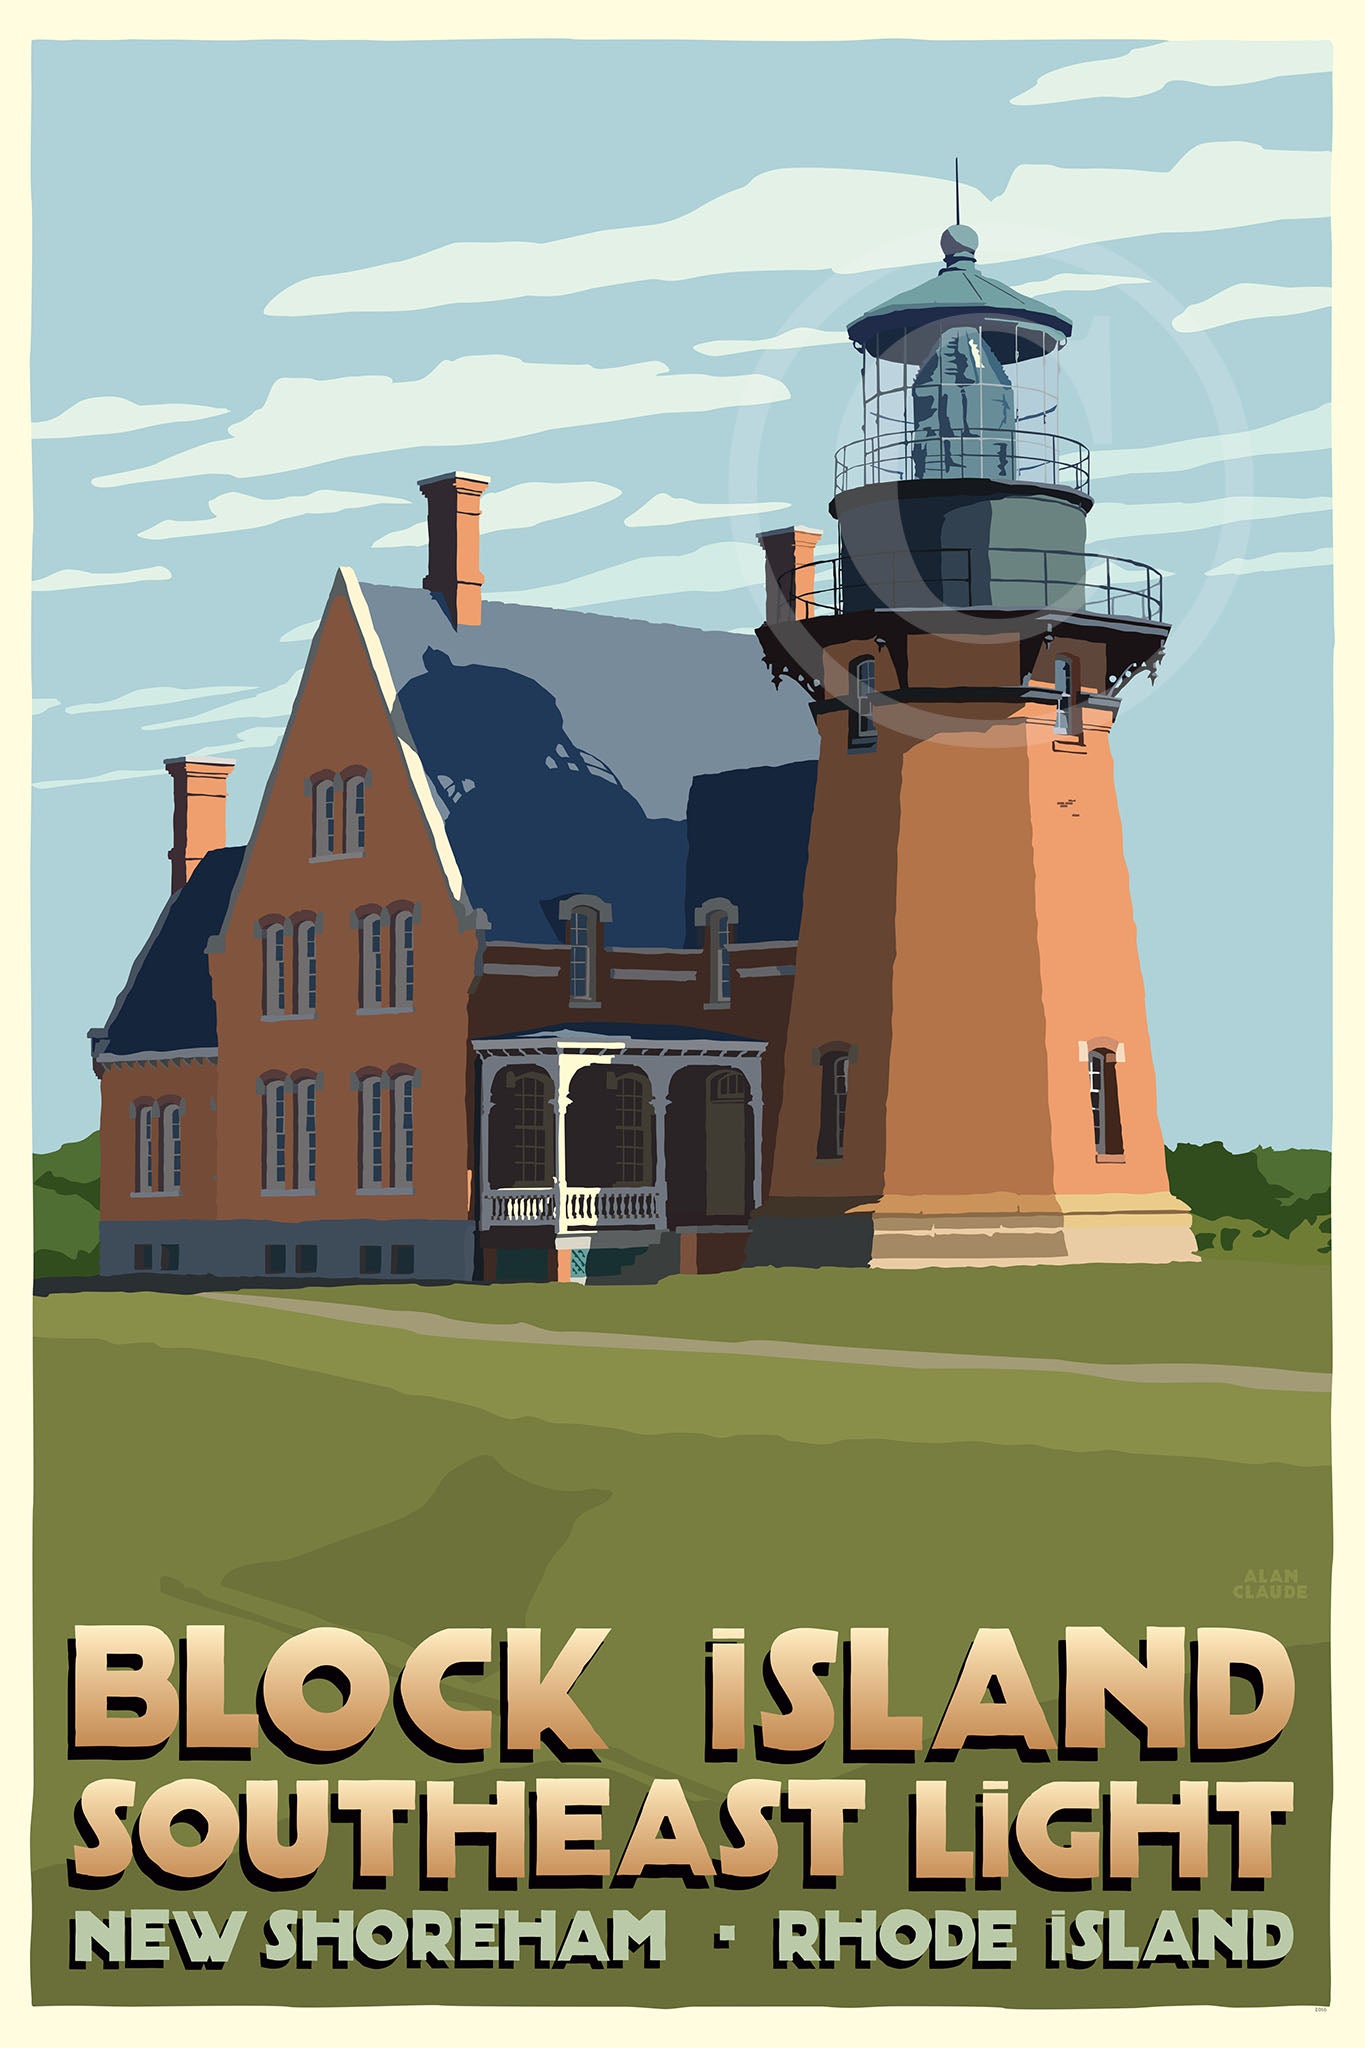 Block Island Southeast Light Art Print 36" x 53" Travel Poster By Alan Claude - Rhode Island